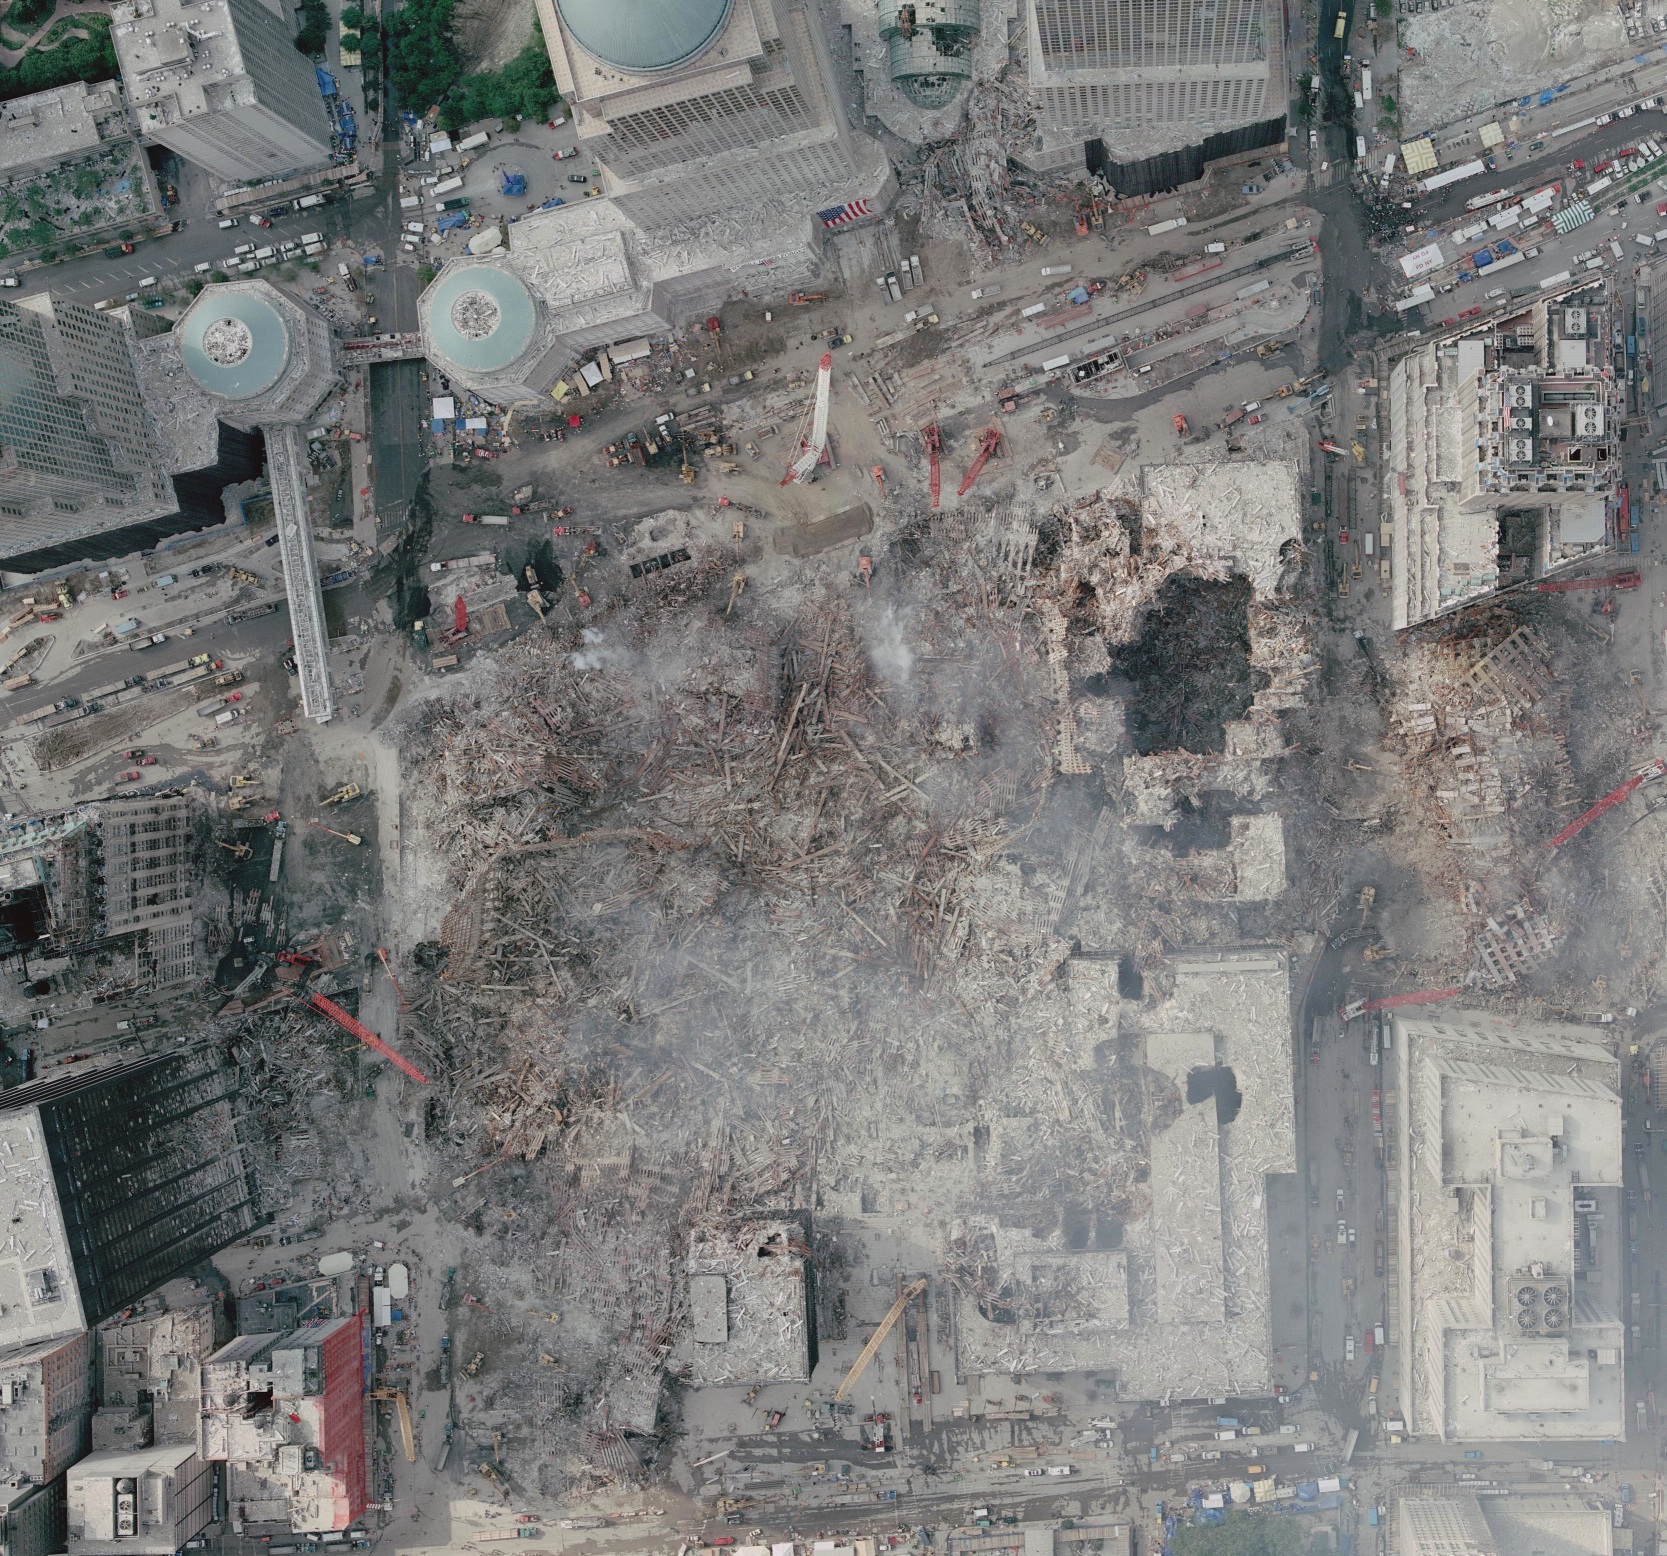 vista aerea dell'area del WTC